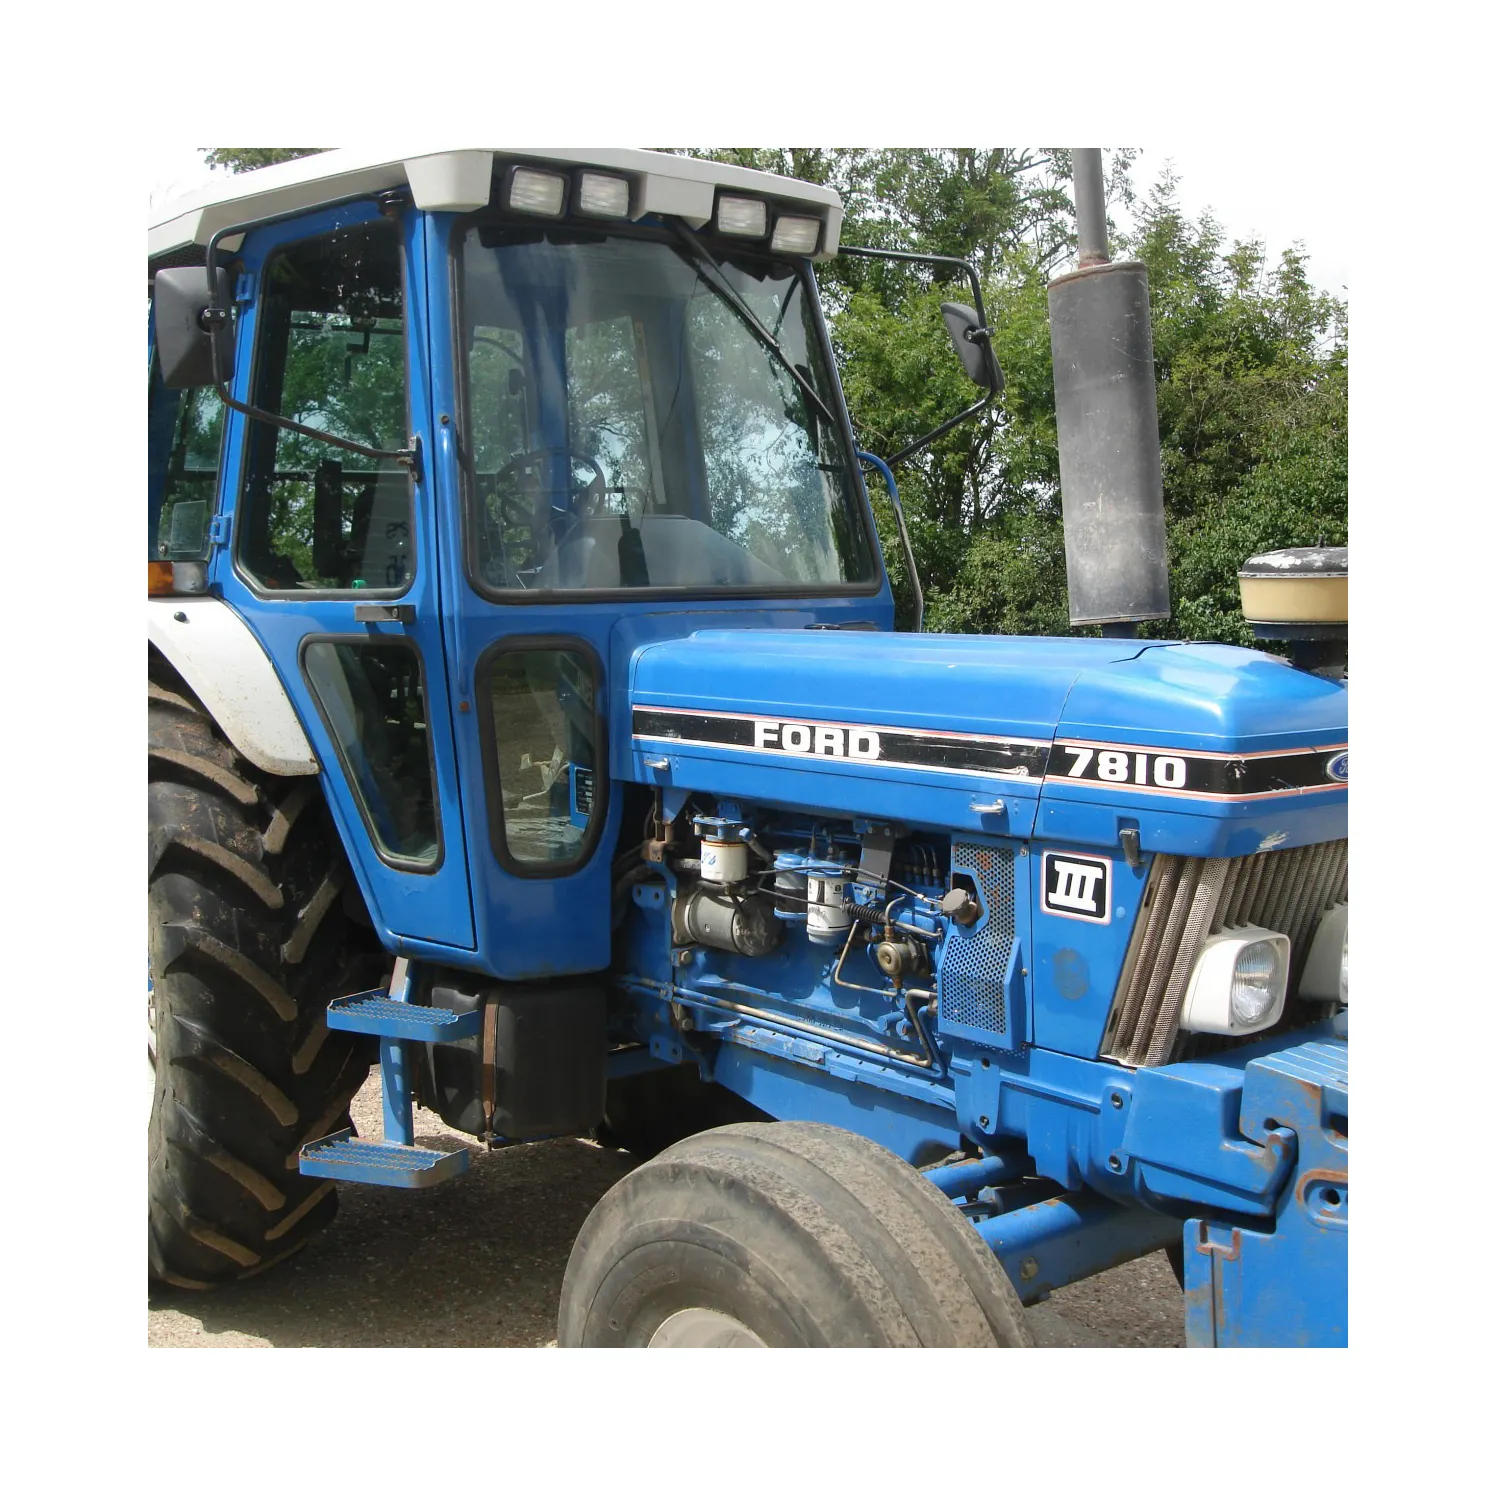 japanische gebrauchte traktoren ford 4x4 farmmaschine landwirtschaftstraktor agricola gebraucht ford-traktor